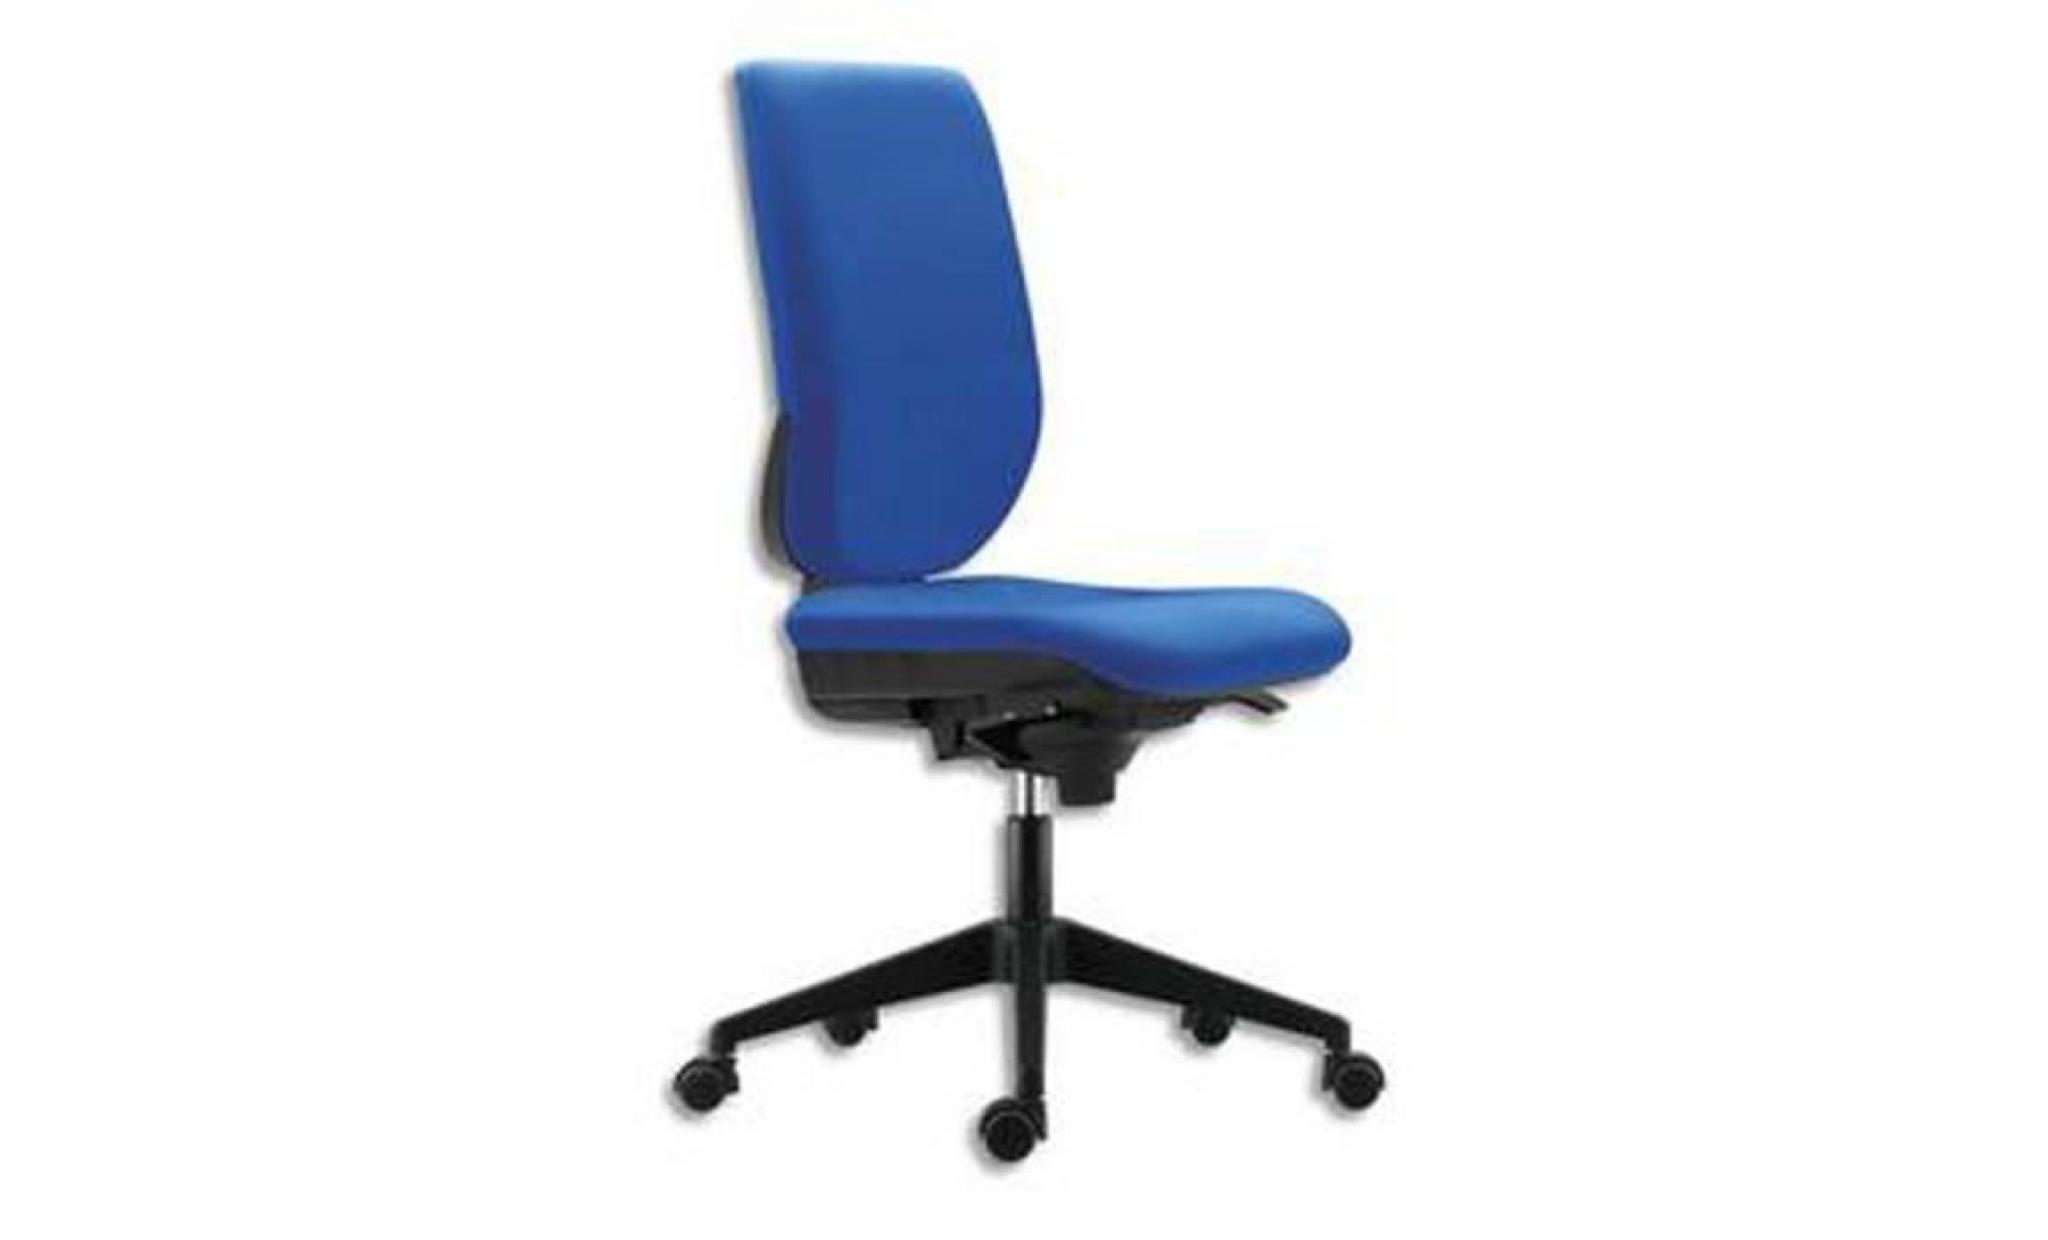 siège tertio dossier et assise tissu bleu, à mécanisme synchrone, piétement nylon, sans accotoirs